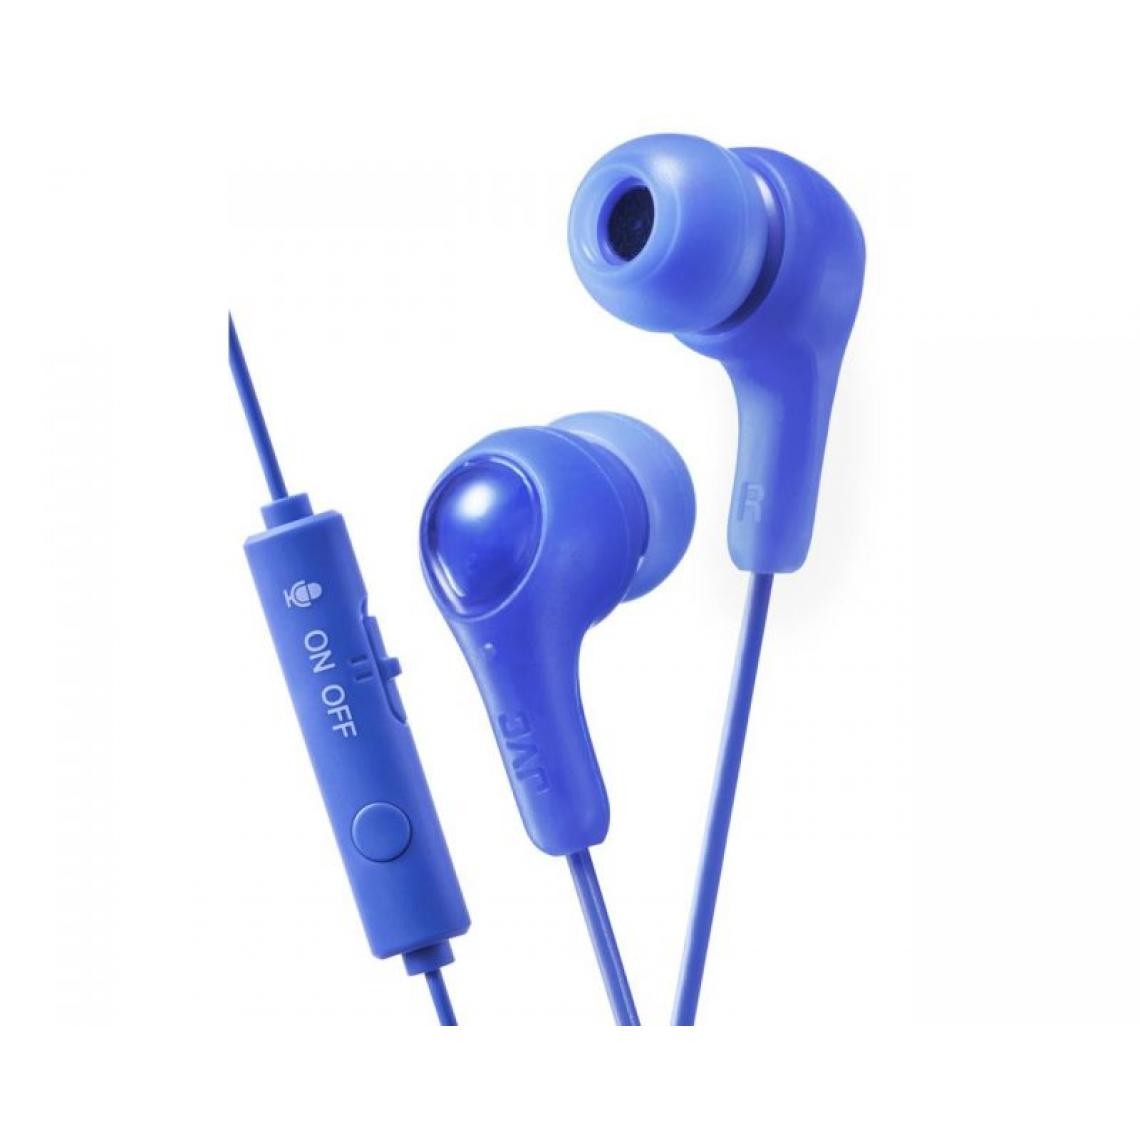 Inconnu - JVC HA-FX7G-A-E Casque intra-auriculaire Bleu - Ecouteurs intra-auriculaires